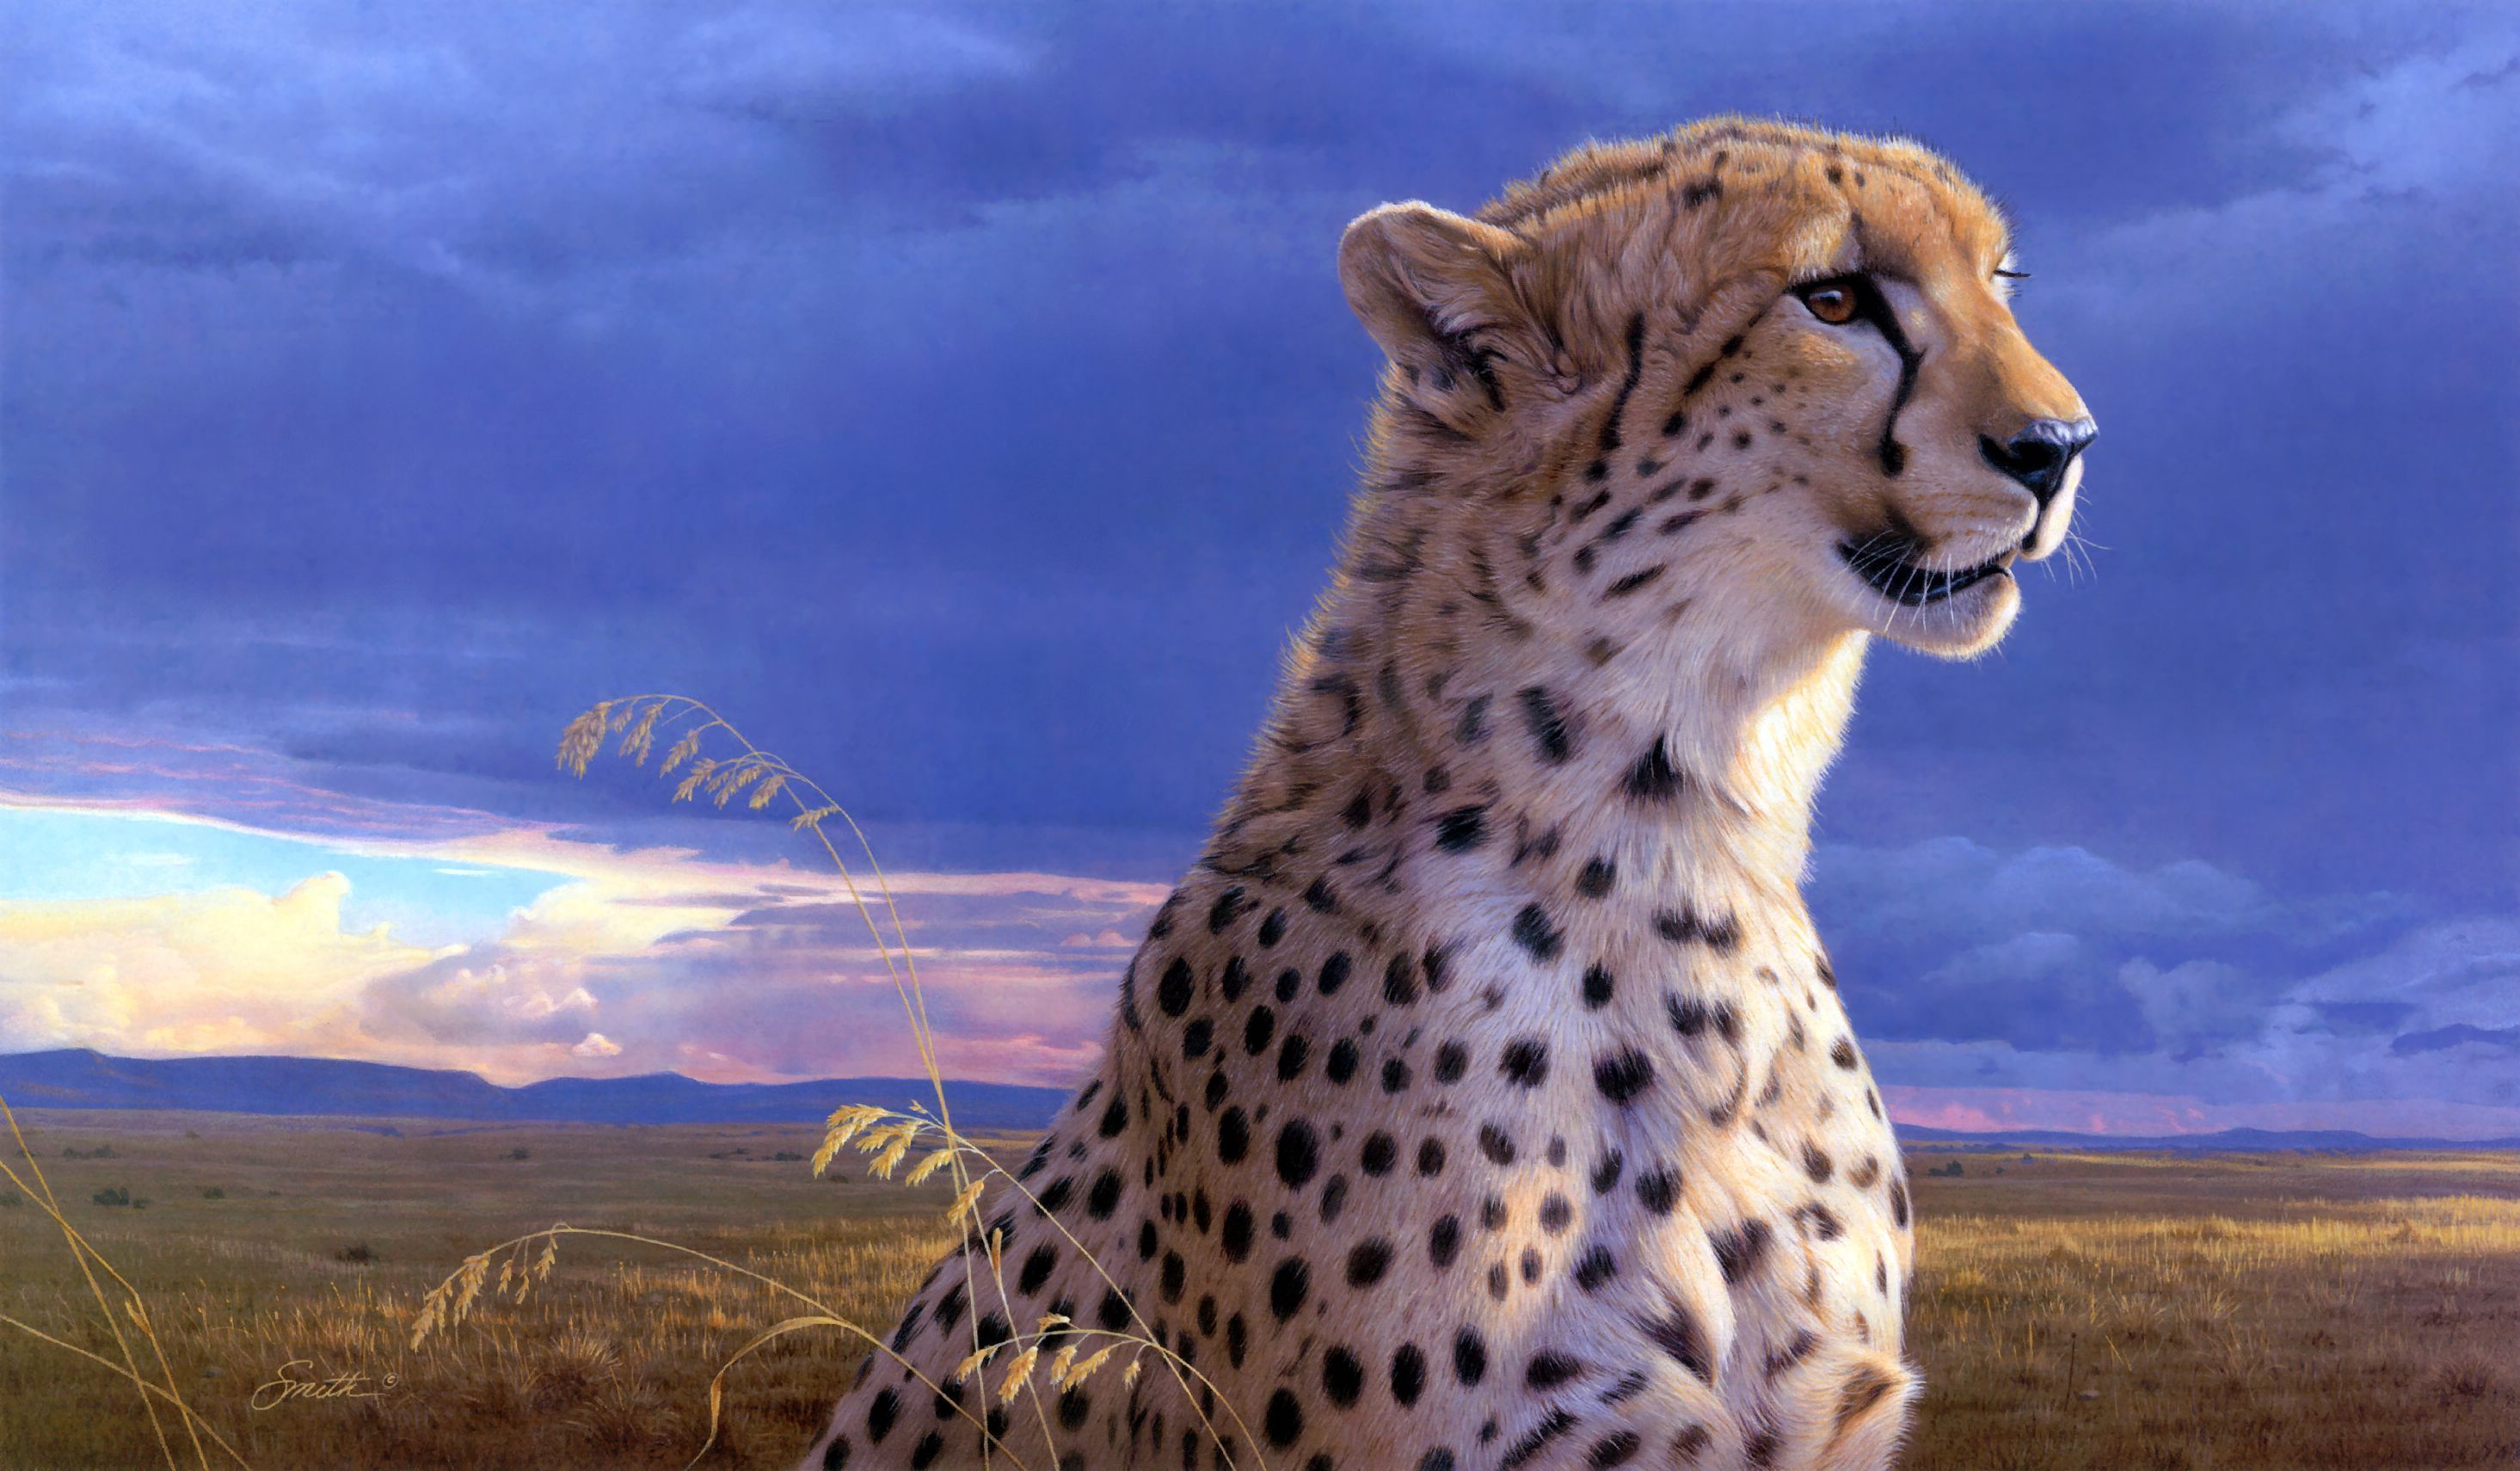 Colorful Cheetah Wallpaper